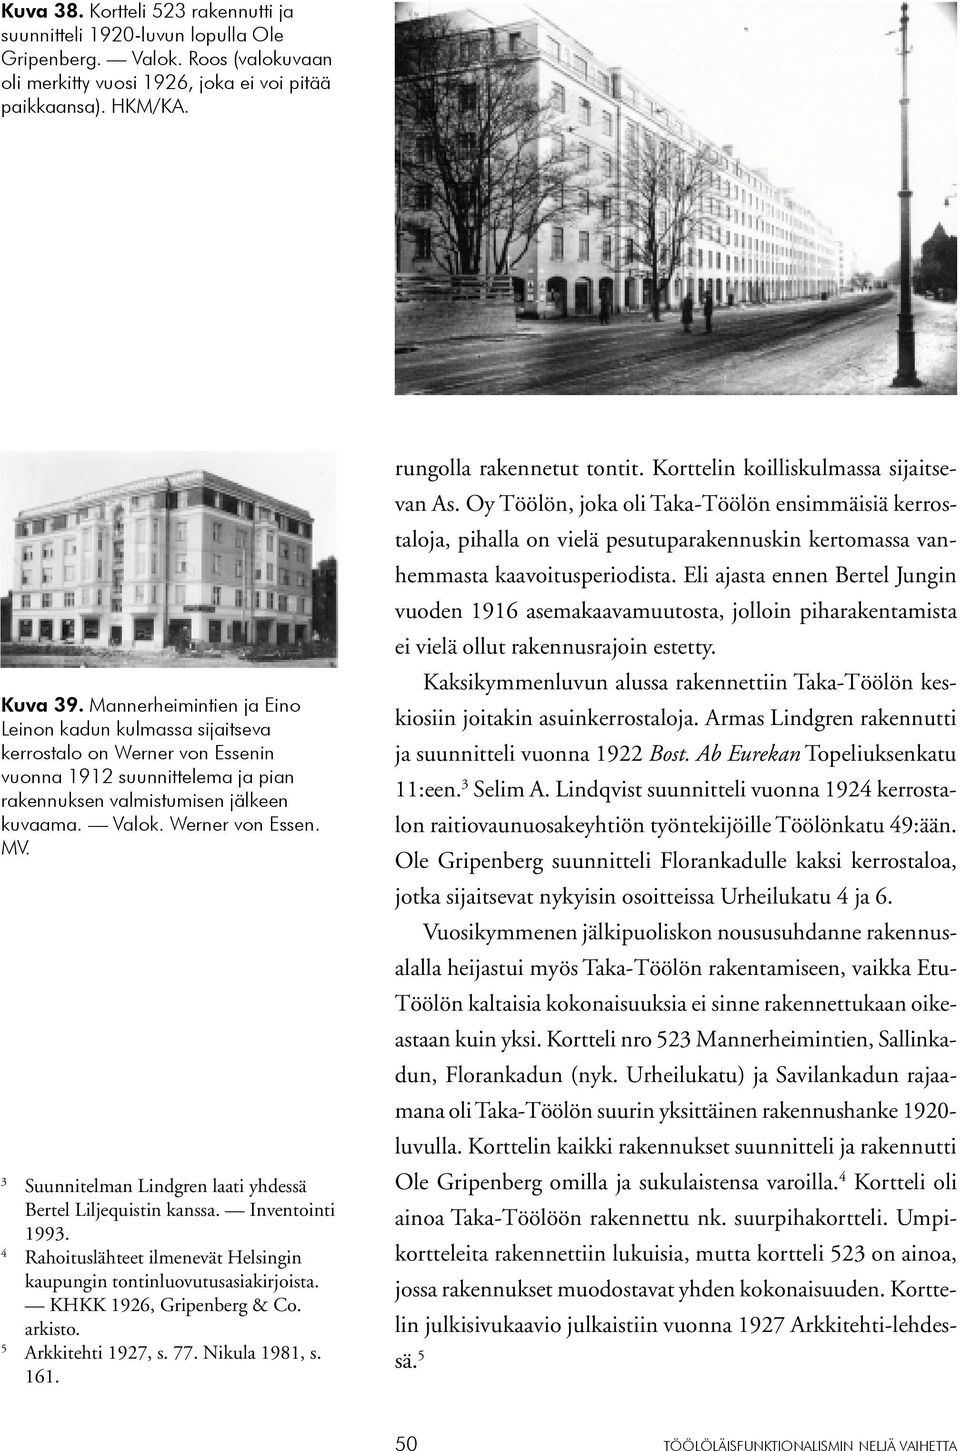 3 Suunnitelman Lindgren laati yhdessä Bertel Liljequistin kanssa. Inventointi 1993. 4 Rahoituslähteet ilmenevät Helsingin kaupungin tontinluovutusasiakirjoista. KHKK 1926, Gripenberg & Co. arkisto.